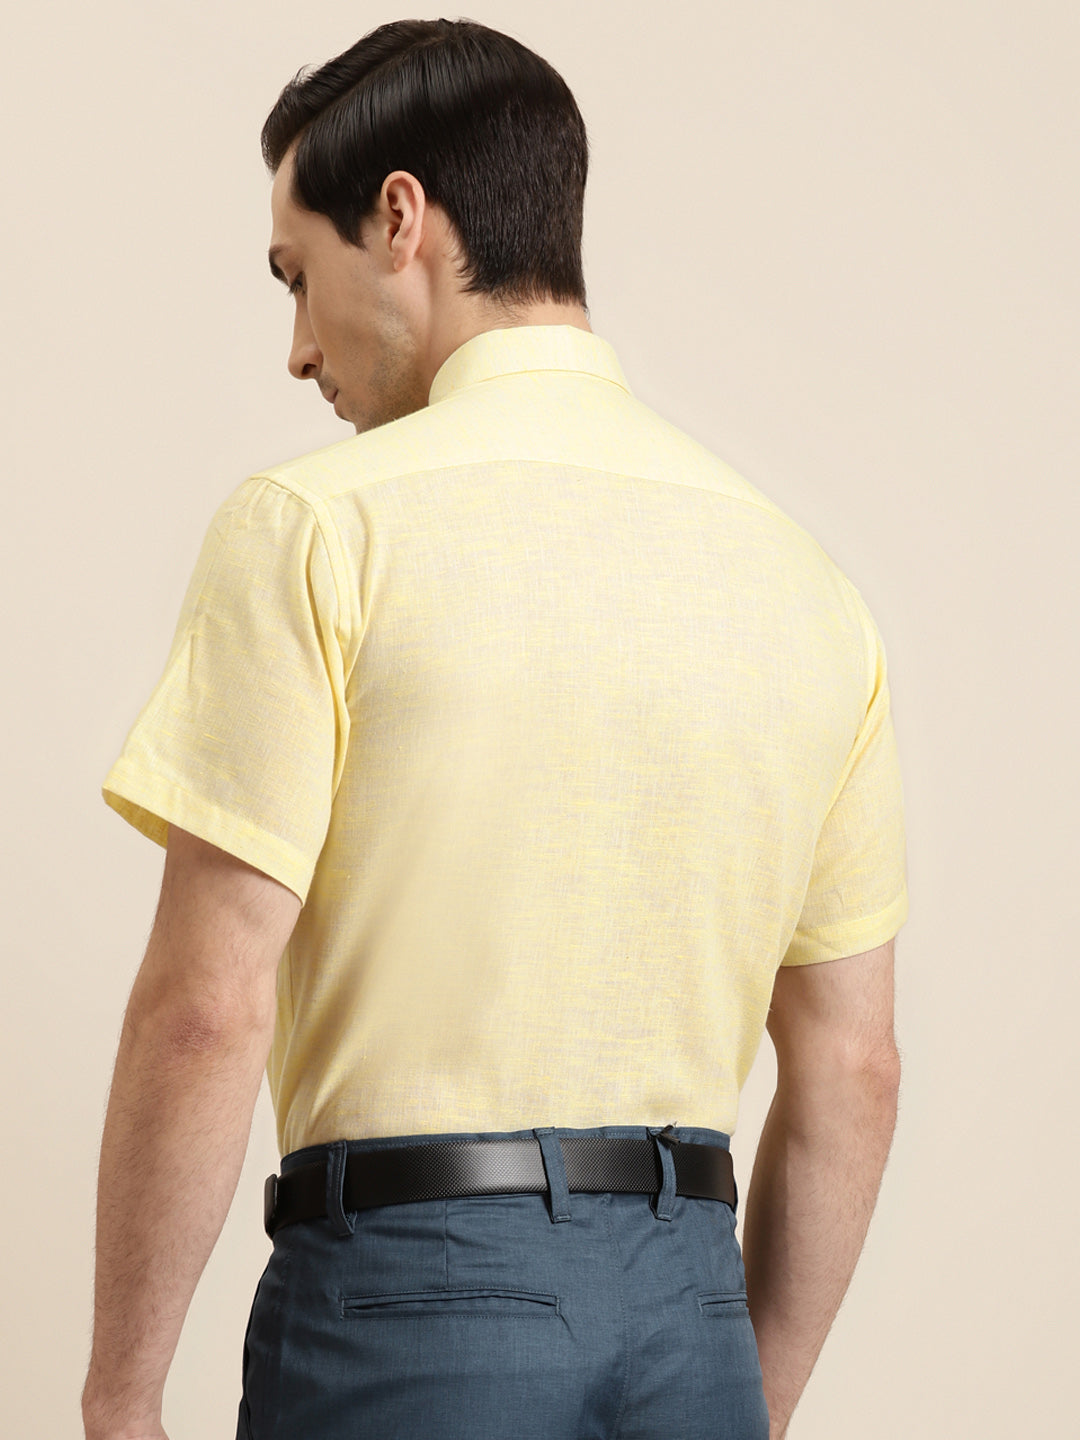 Men's Cotton Blend Lemon Classic Formal Shirt - Sojanya